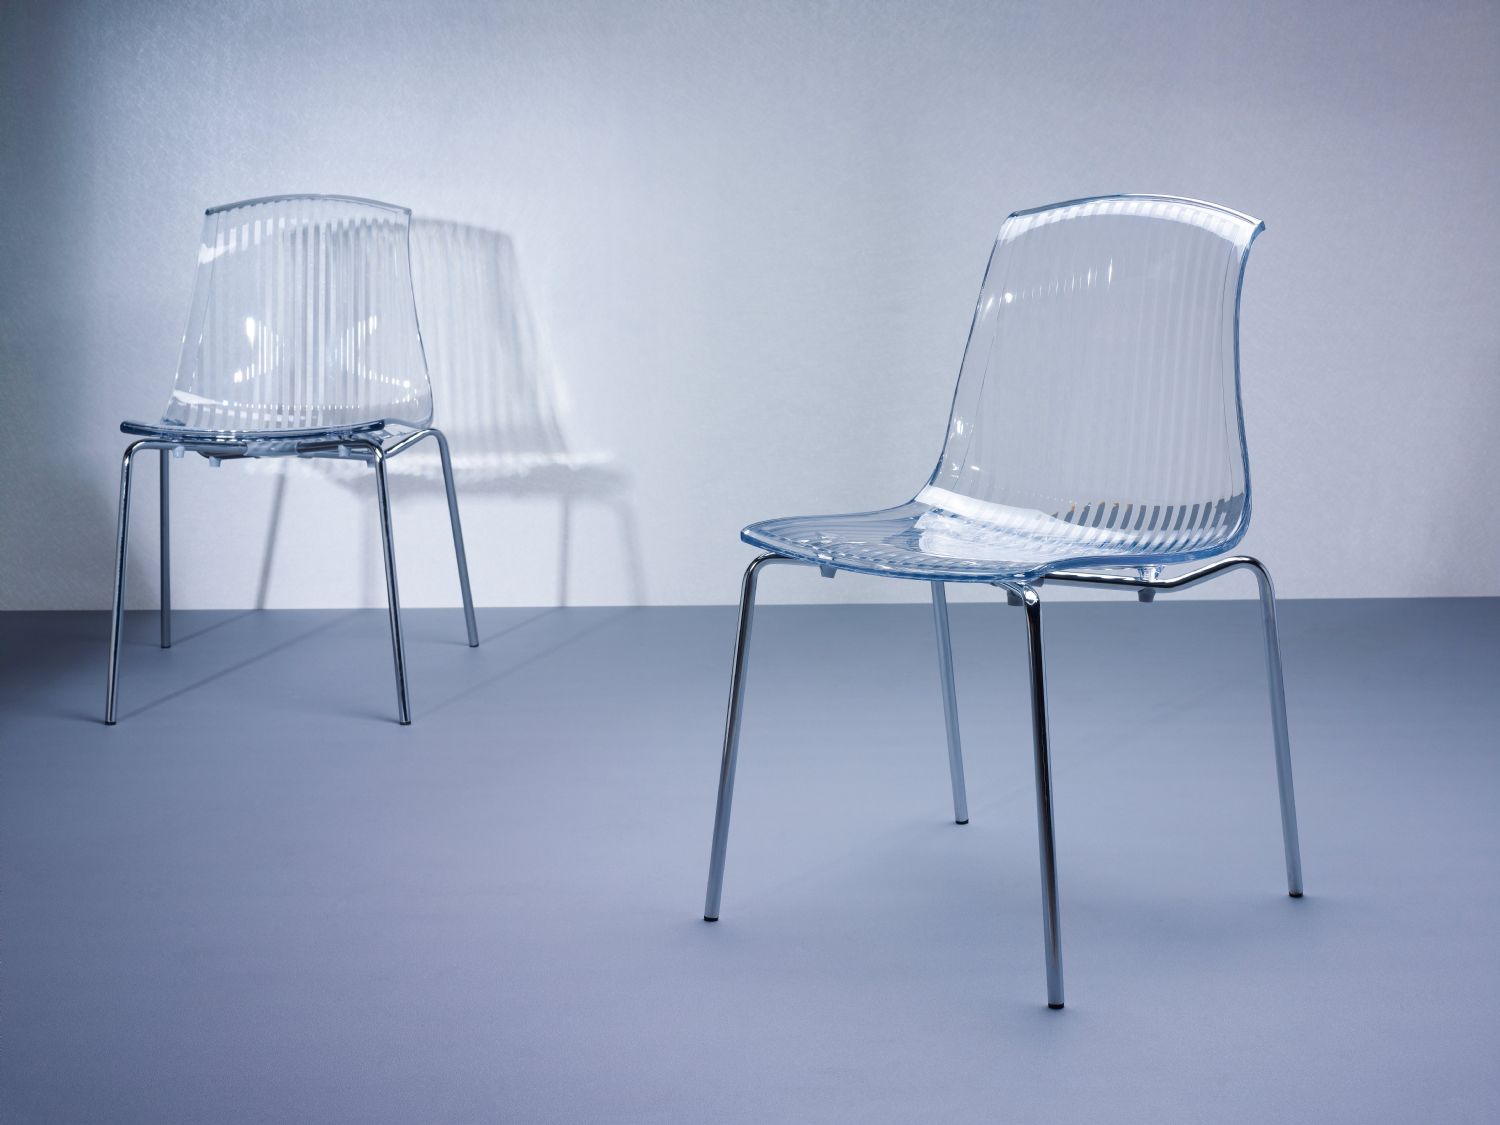 Allegra Indoor Dining Chair Transparent Black ISP057-TBLA - 5